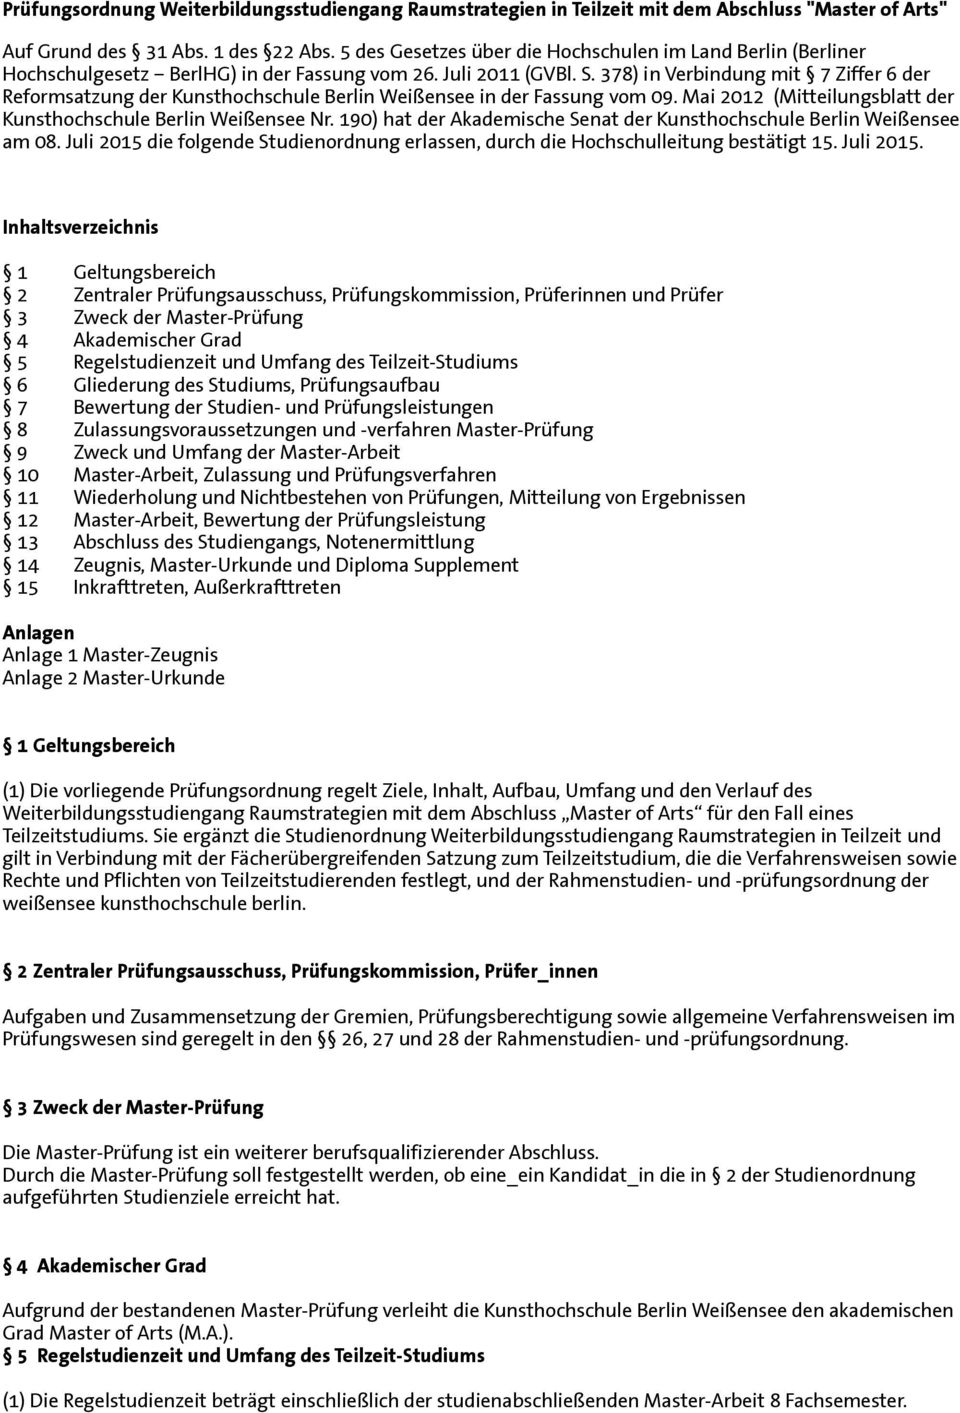 378) in Verbindung mit 7 Ziffer 6 der Reformsatzung der Kunsthochschule Berlin Weißensee in der Fassung vom 09. Mai 2012 (Mitteilungsblatt der Kunsthochschule Berlin Weißensee Nr.